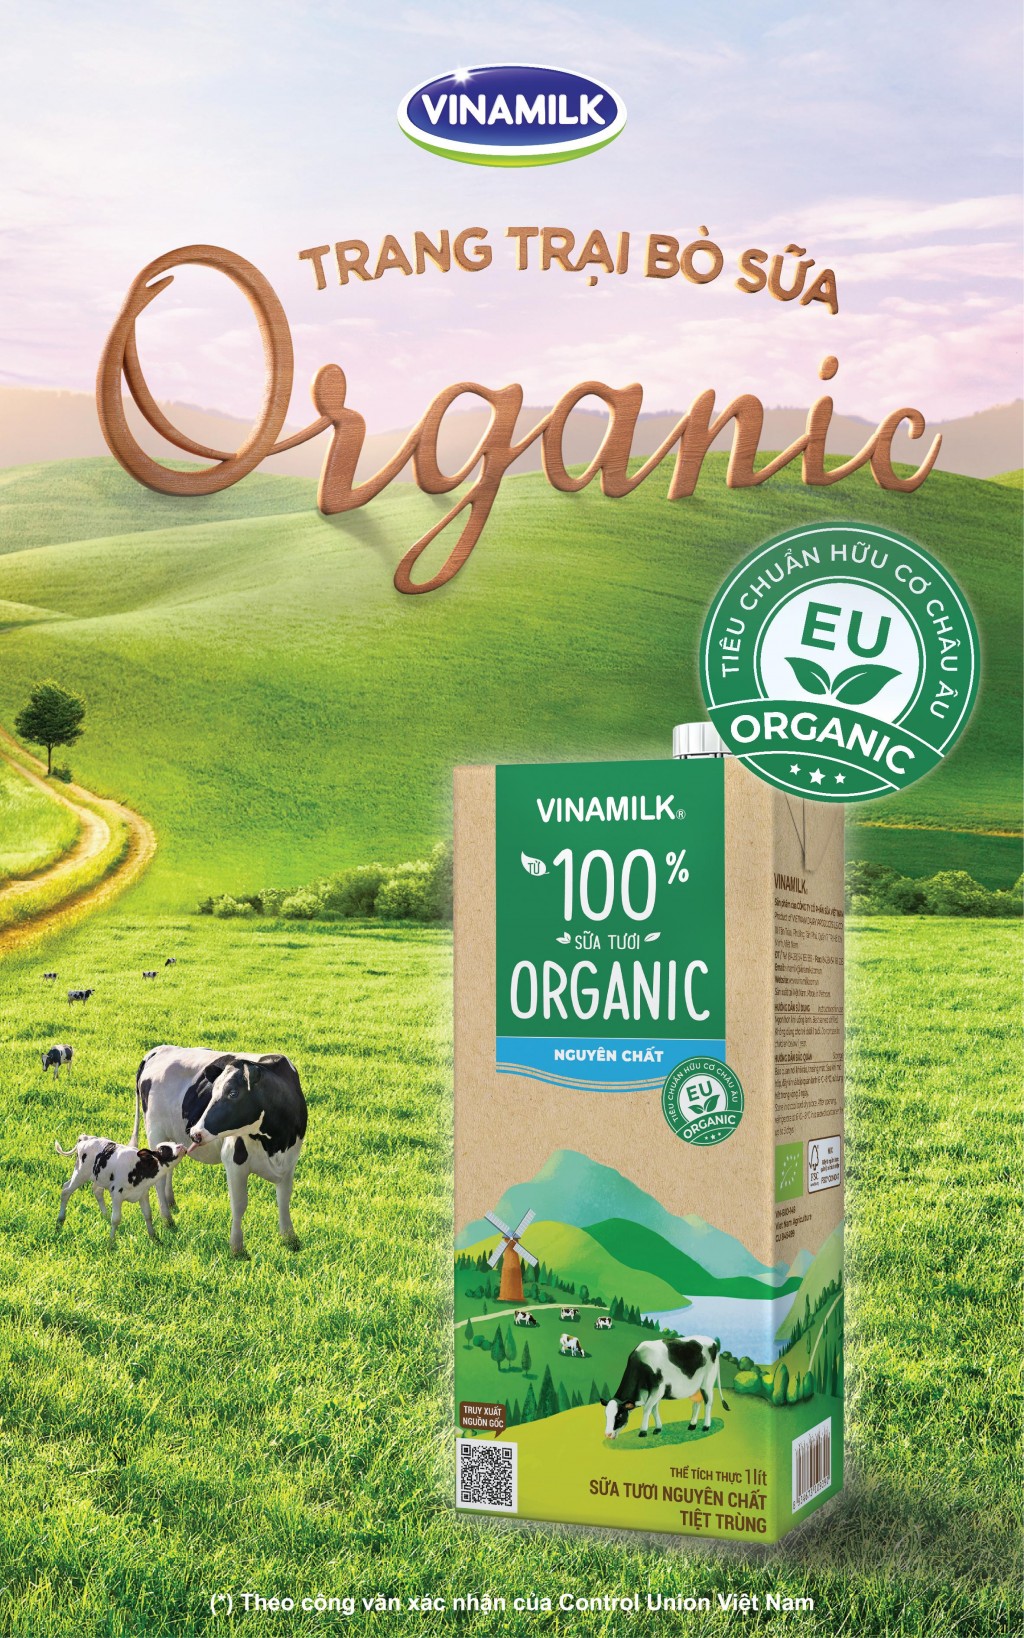 Sữa tươi Vinamilk Organic không đường(*) là lựa chọn an toàn và hợp lý giúp thai kỳ khỏe mạnh